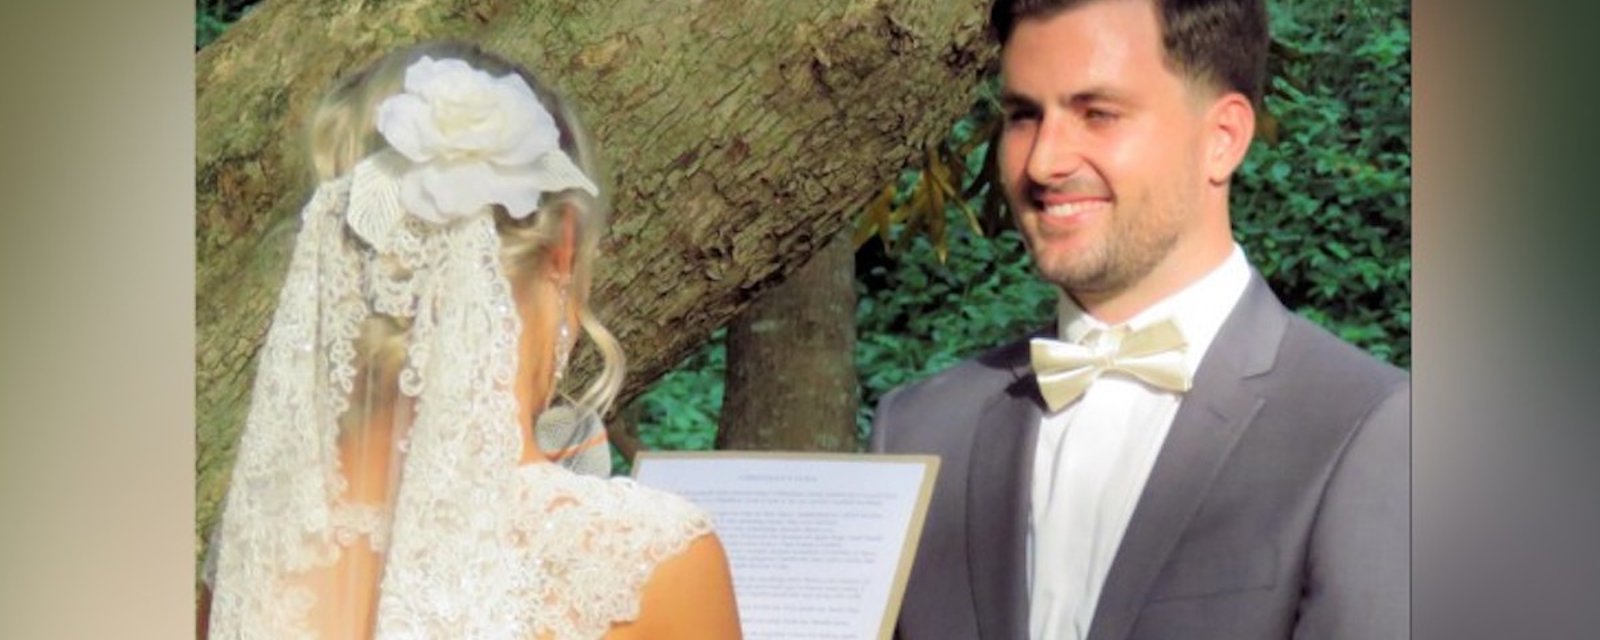 Une future mariée trompée a surpris tout le monde lors de la cérémonie de mariage